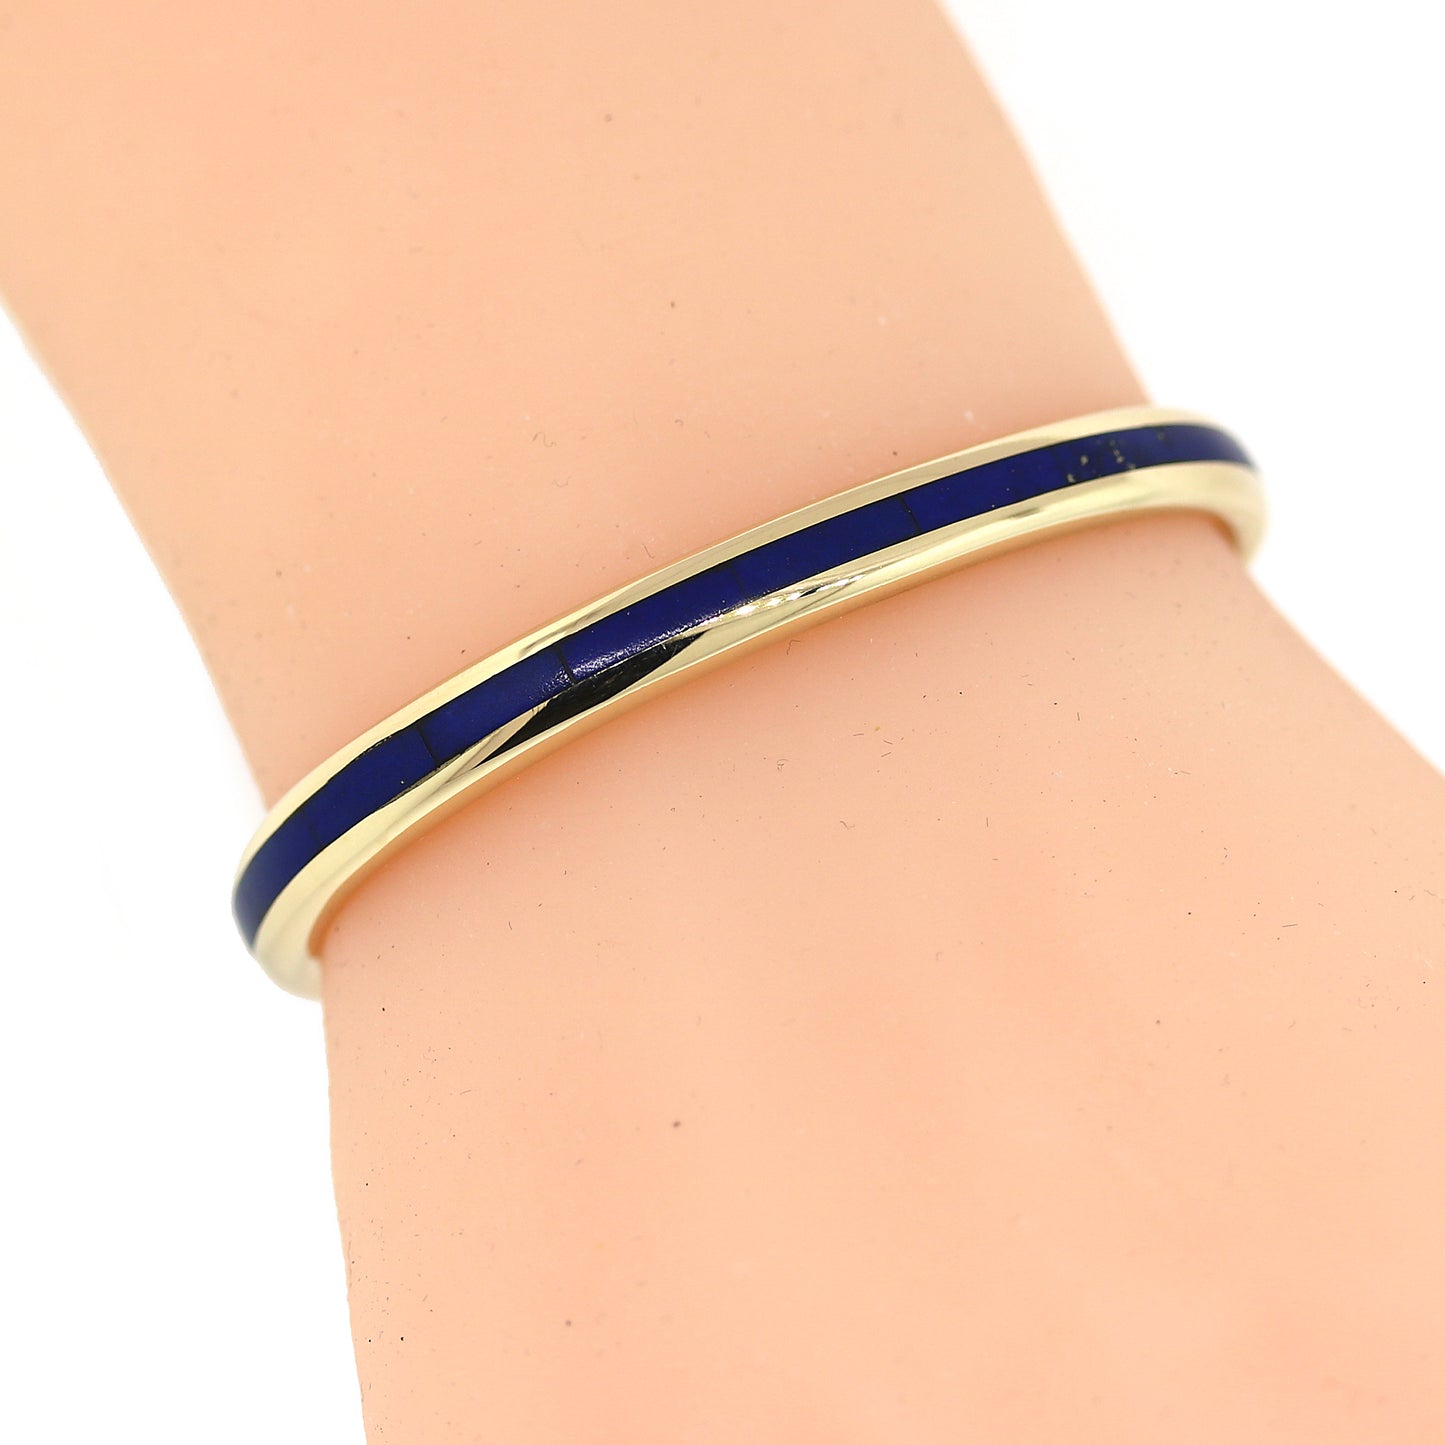 Blue Enamel Cuff Bracelet in Solid Gold